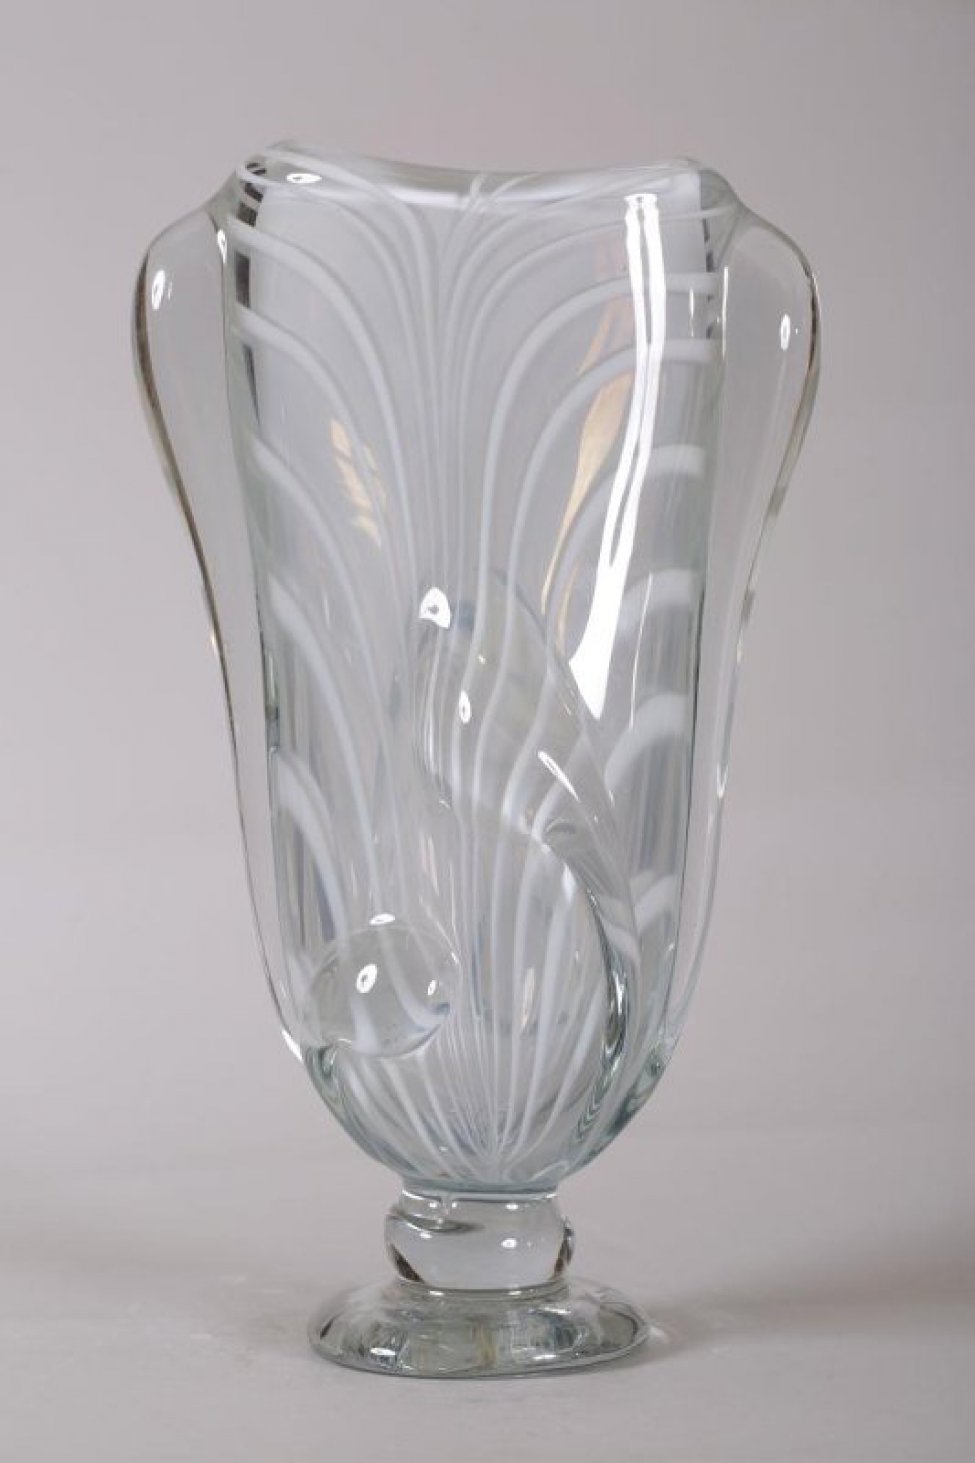 ваза серого цвета, плоская, с белыми полосами из толстого стекла; форма вытянутая, расширяющейся кверху, на ножке. По тулову - налепы, два из которых имитируют ручки. Налепы и ножка из прозрачного стекла.